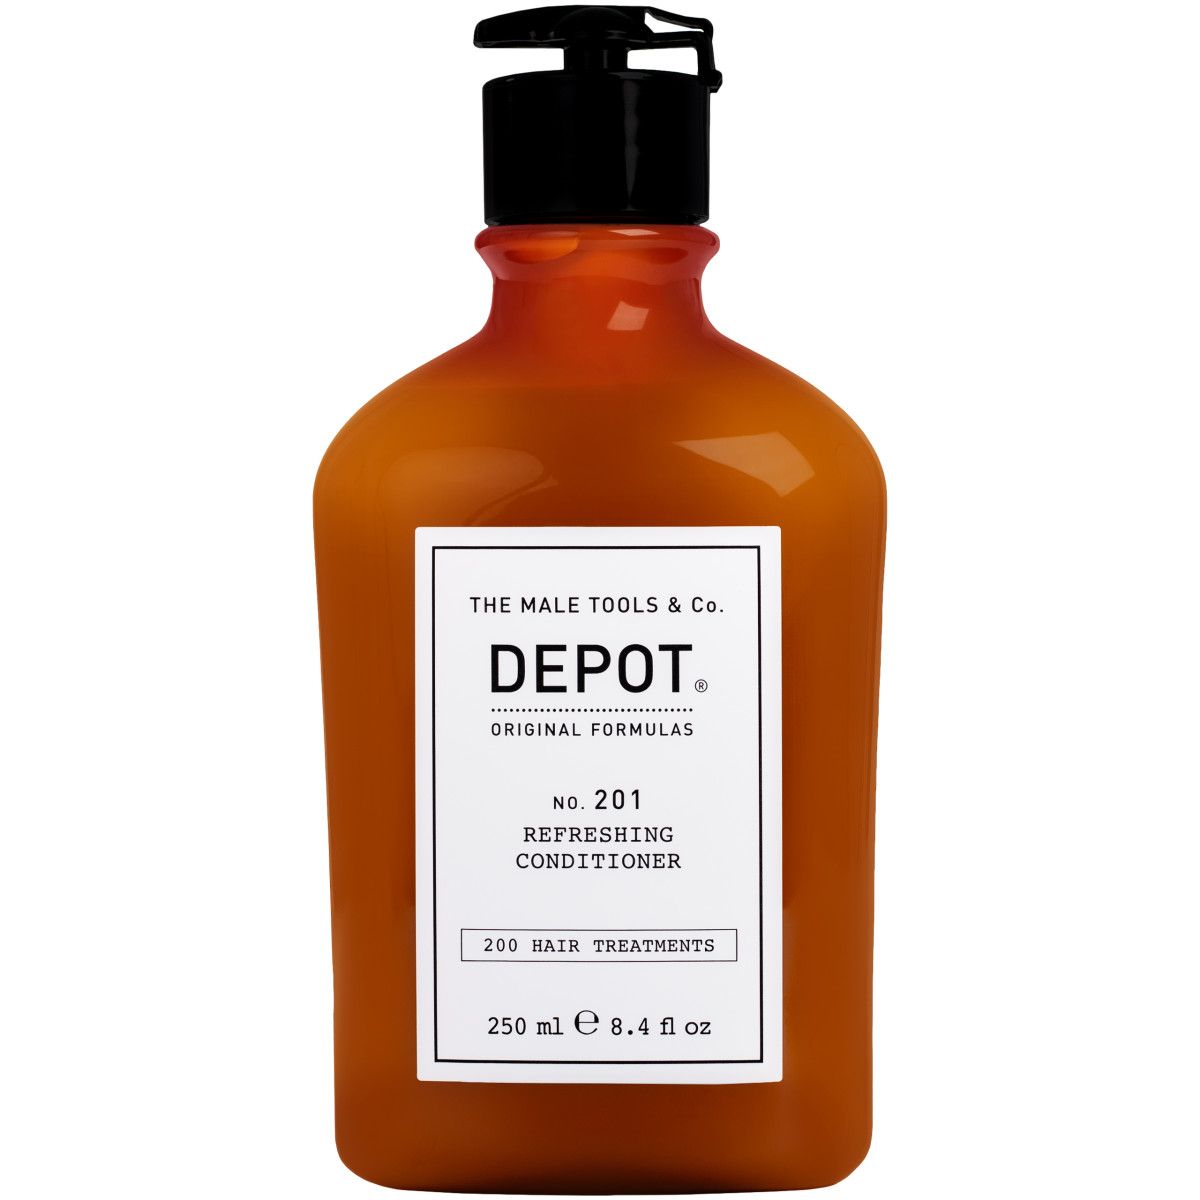 Depot NO. 201 Refreshing Conditioner – odświeżająca odżywka do włosów dla mężczyzn, 250 ml